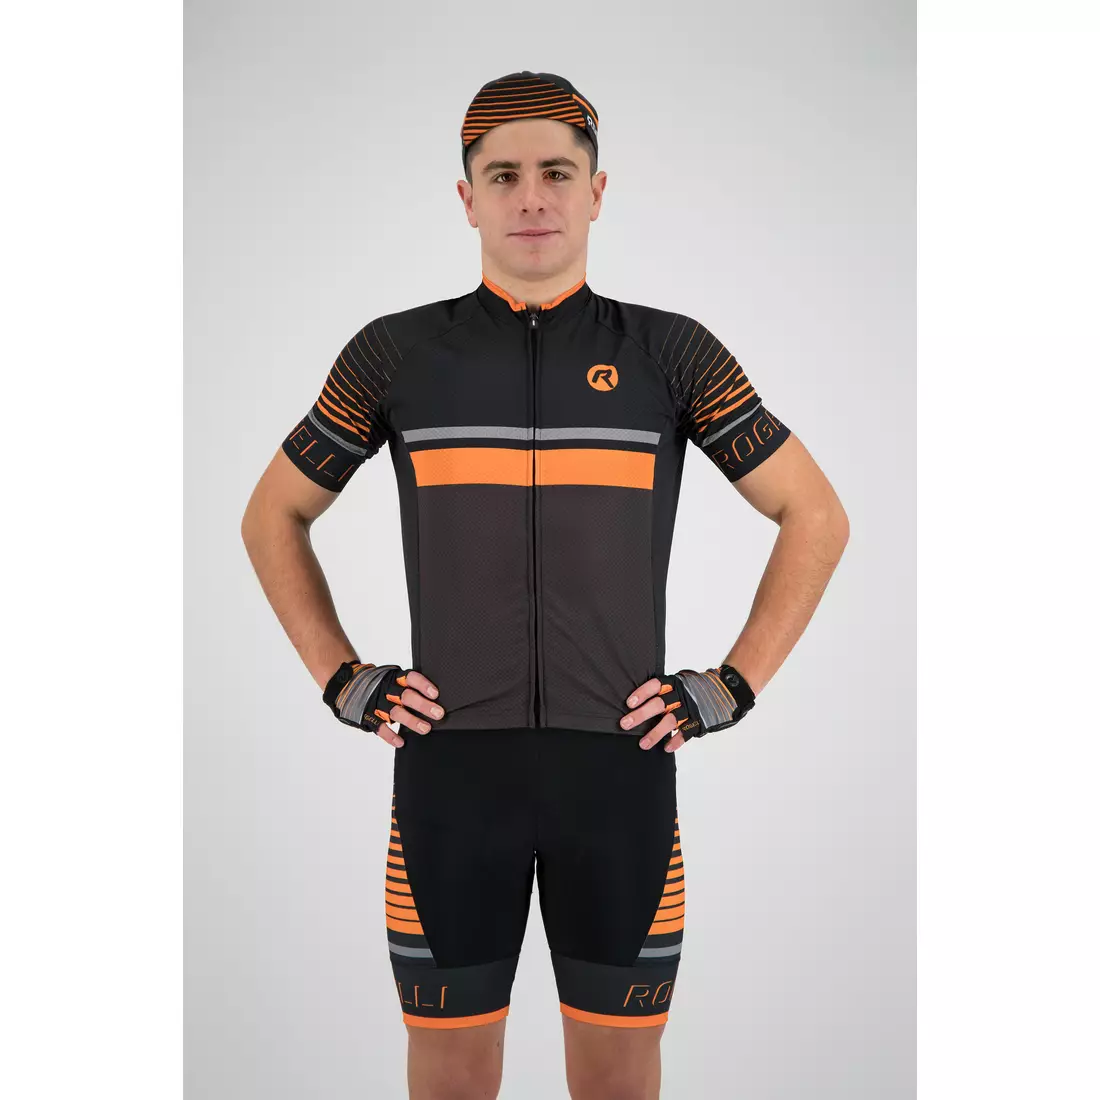 Rogelli HERO 001.264 pánsky cyklistický dres sivý / čierny / oranžový